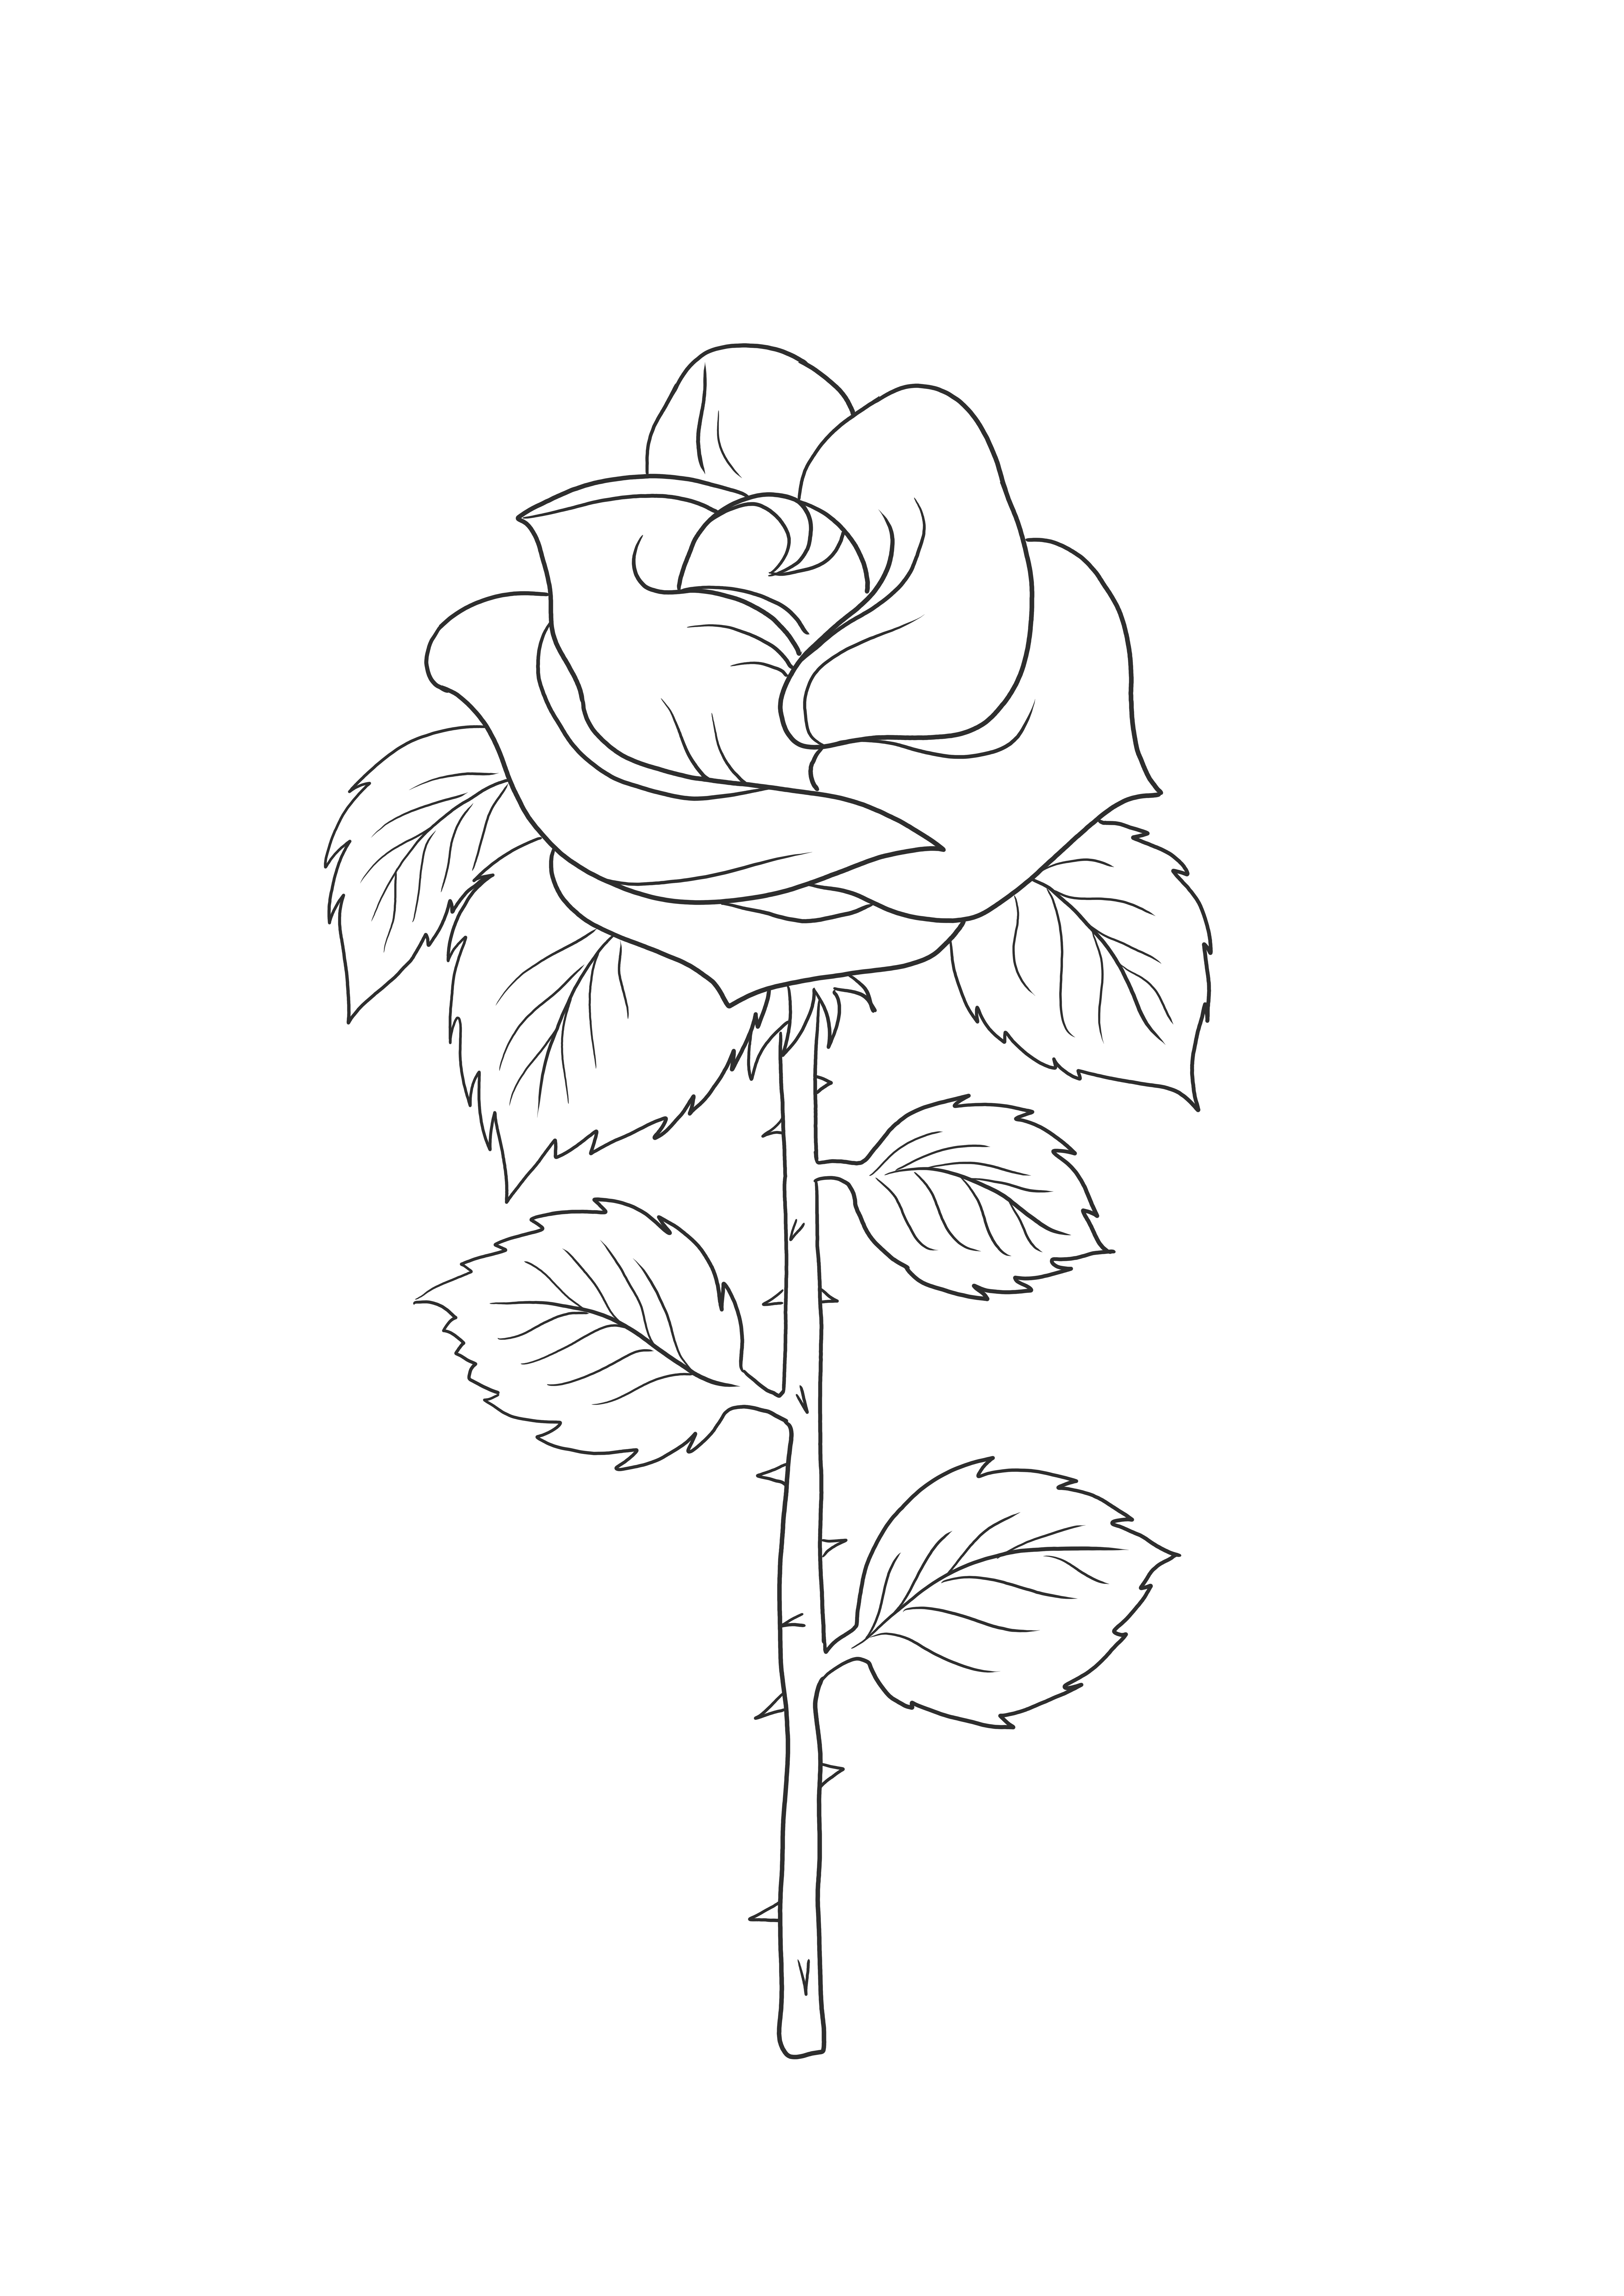 Ein Ausmalbild einer einfachen Rose – ein tolles Hilfsmittel für den Pflanzenunterricht